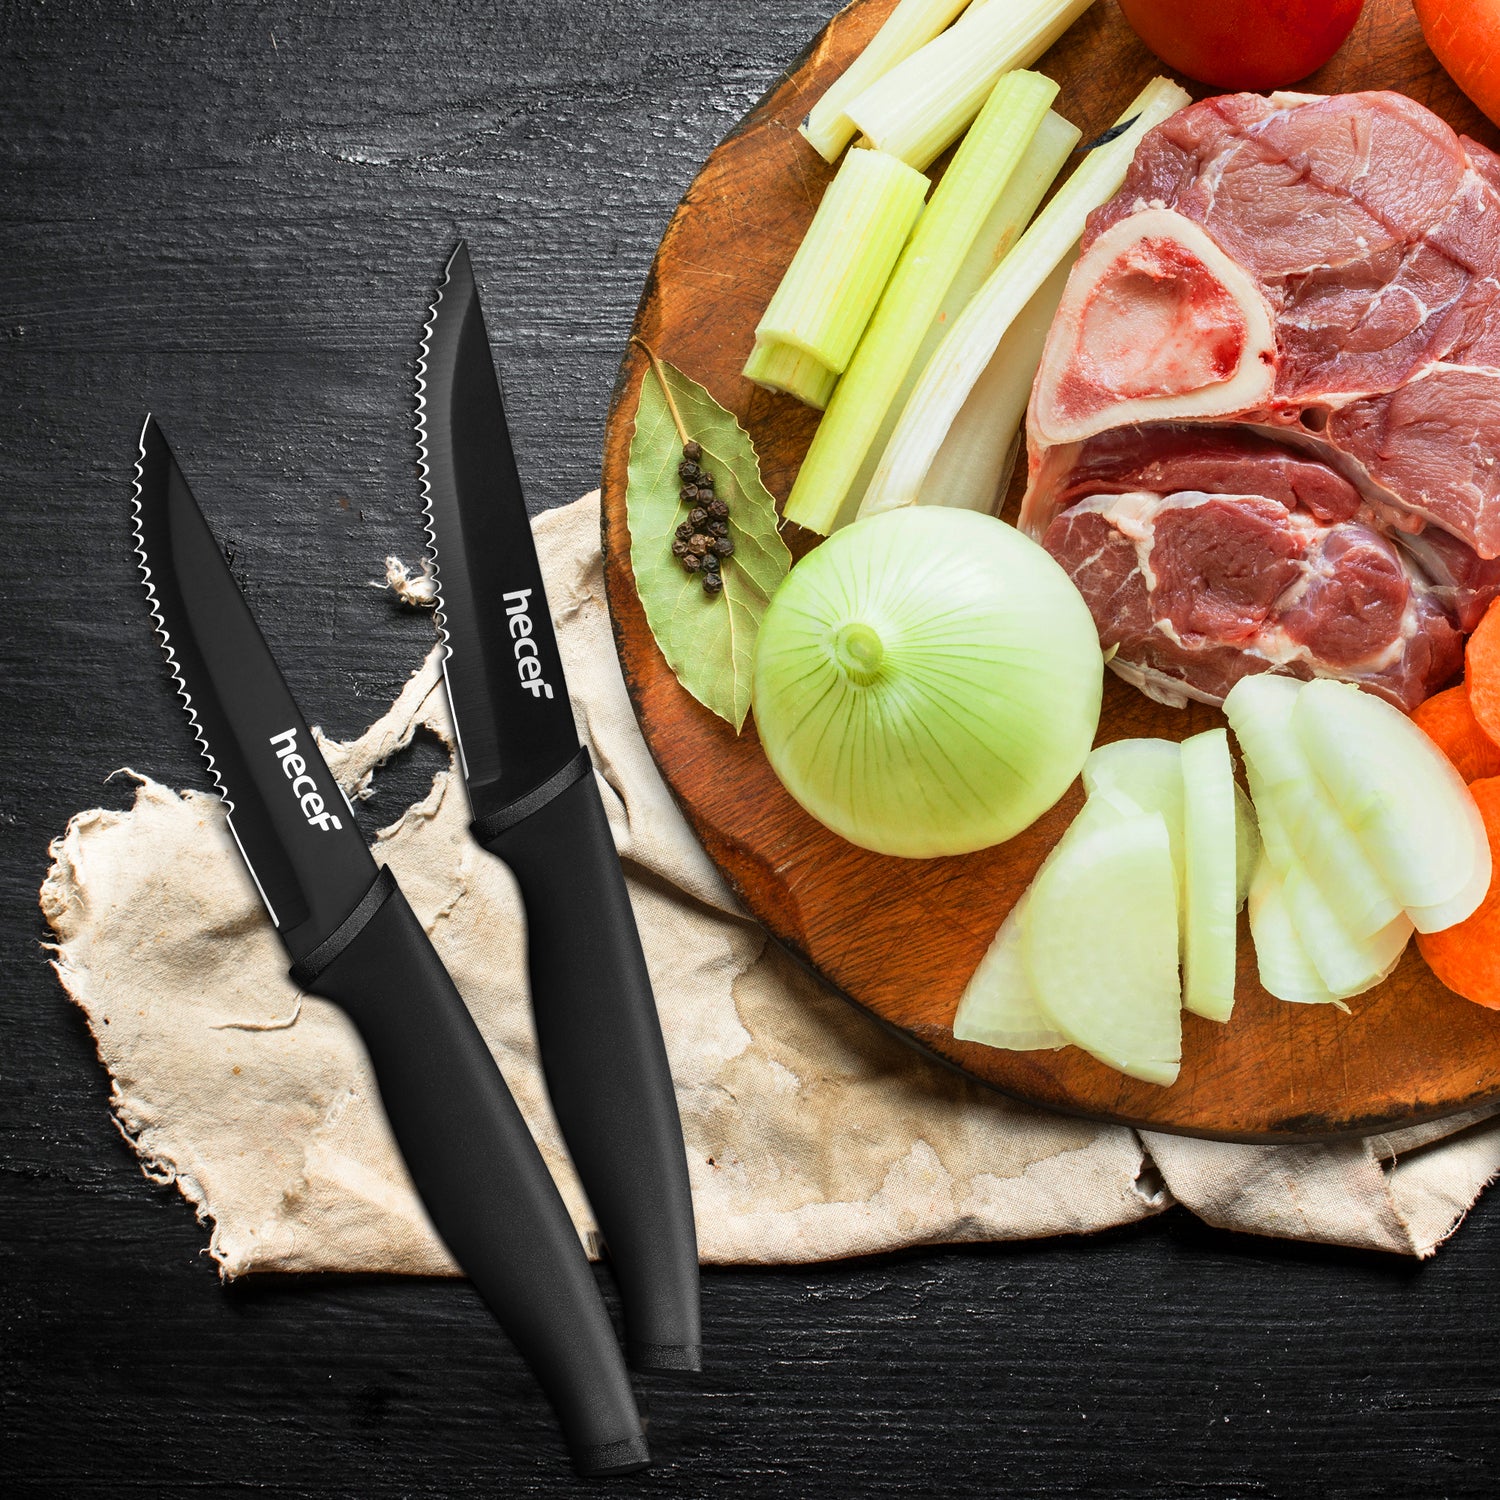 Stainless Steel Serrated Steak Knife Set Dishwasher Safe